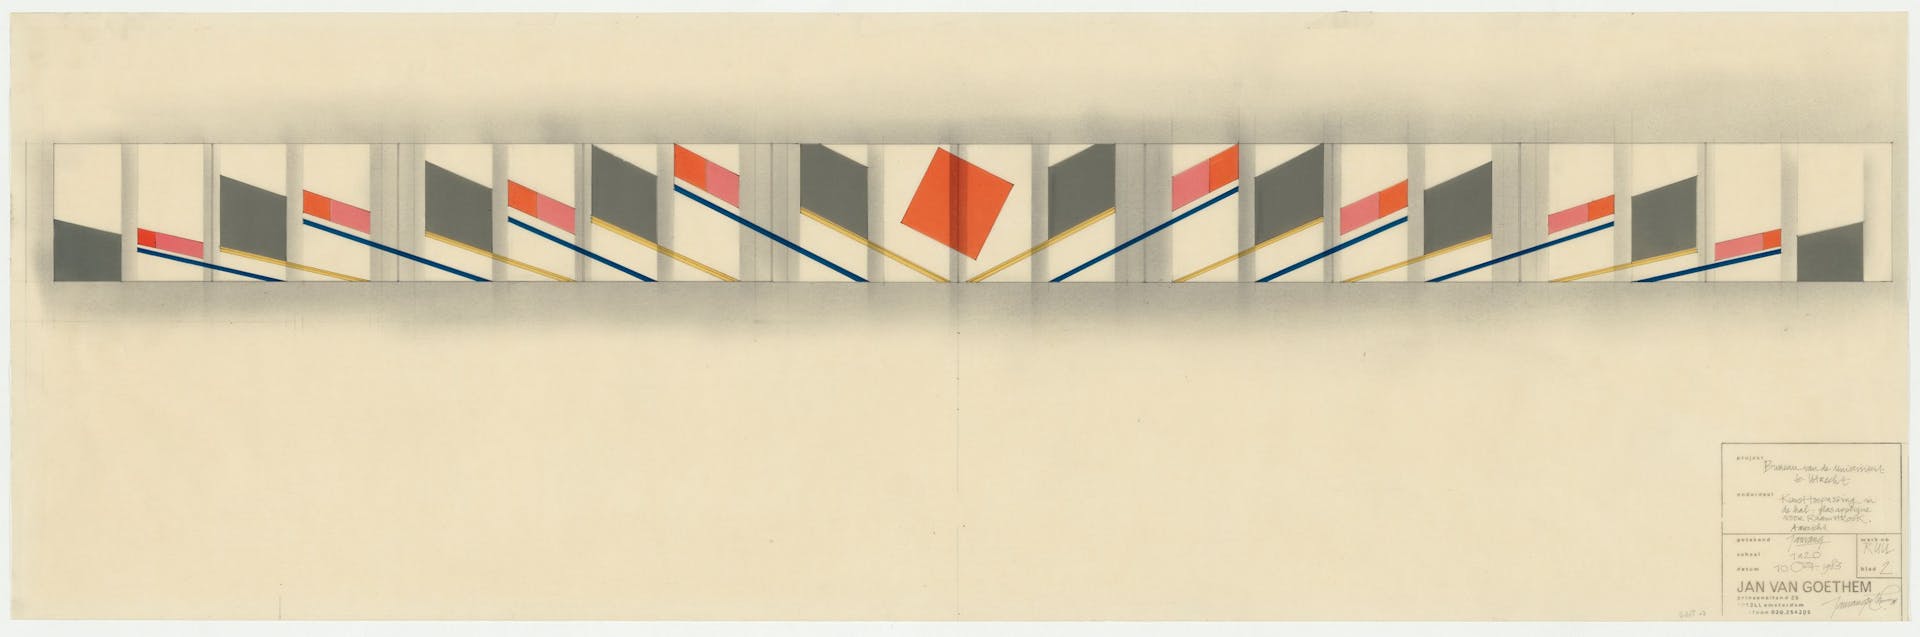 Jan van Goethem, toepassing van meerdere kleuren zips op transparant papier voor een glasdecoratie in een raamstrook van de Universiteit Utrecht, 1983. De zips geven hier het werkelijke kleurenpalet weer van het uit te voeren ontwerp. Collectie… 